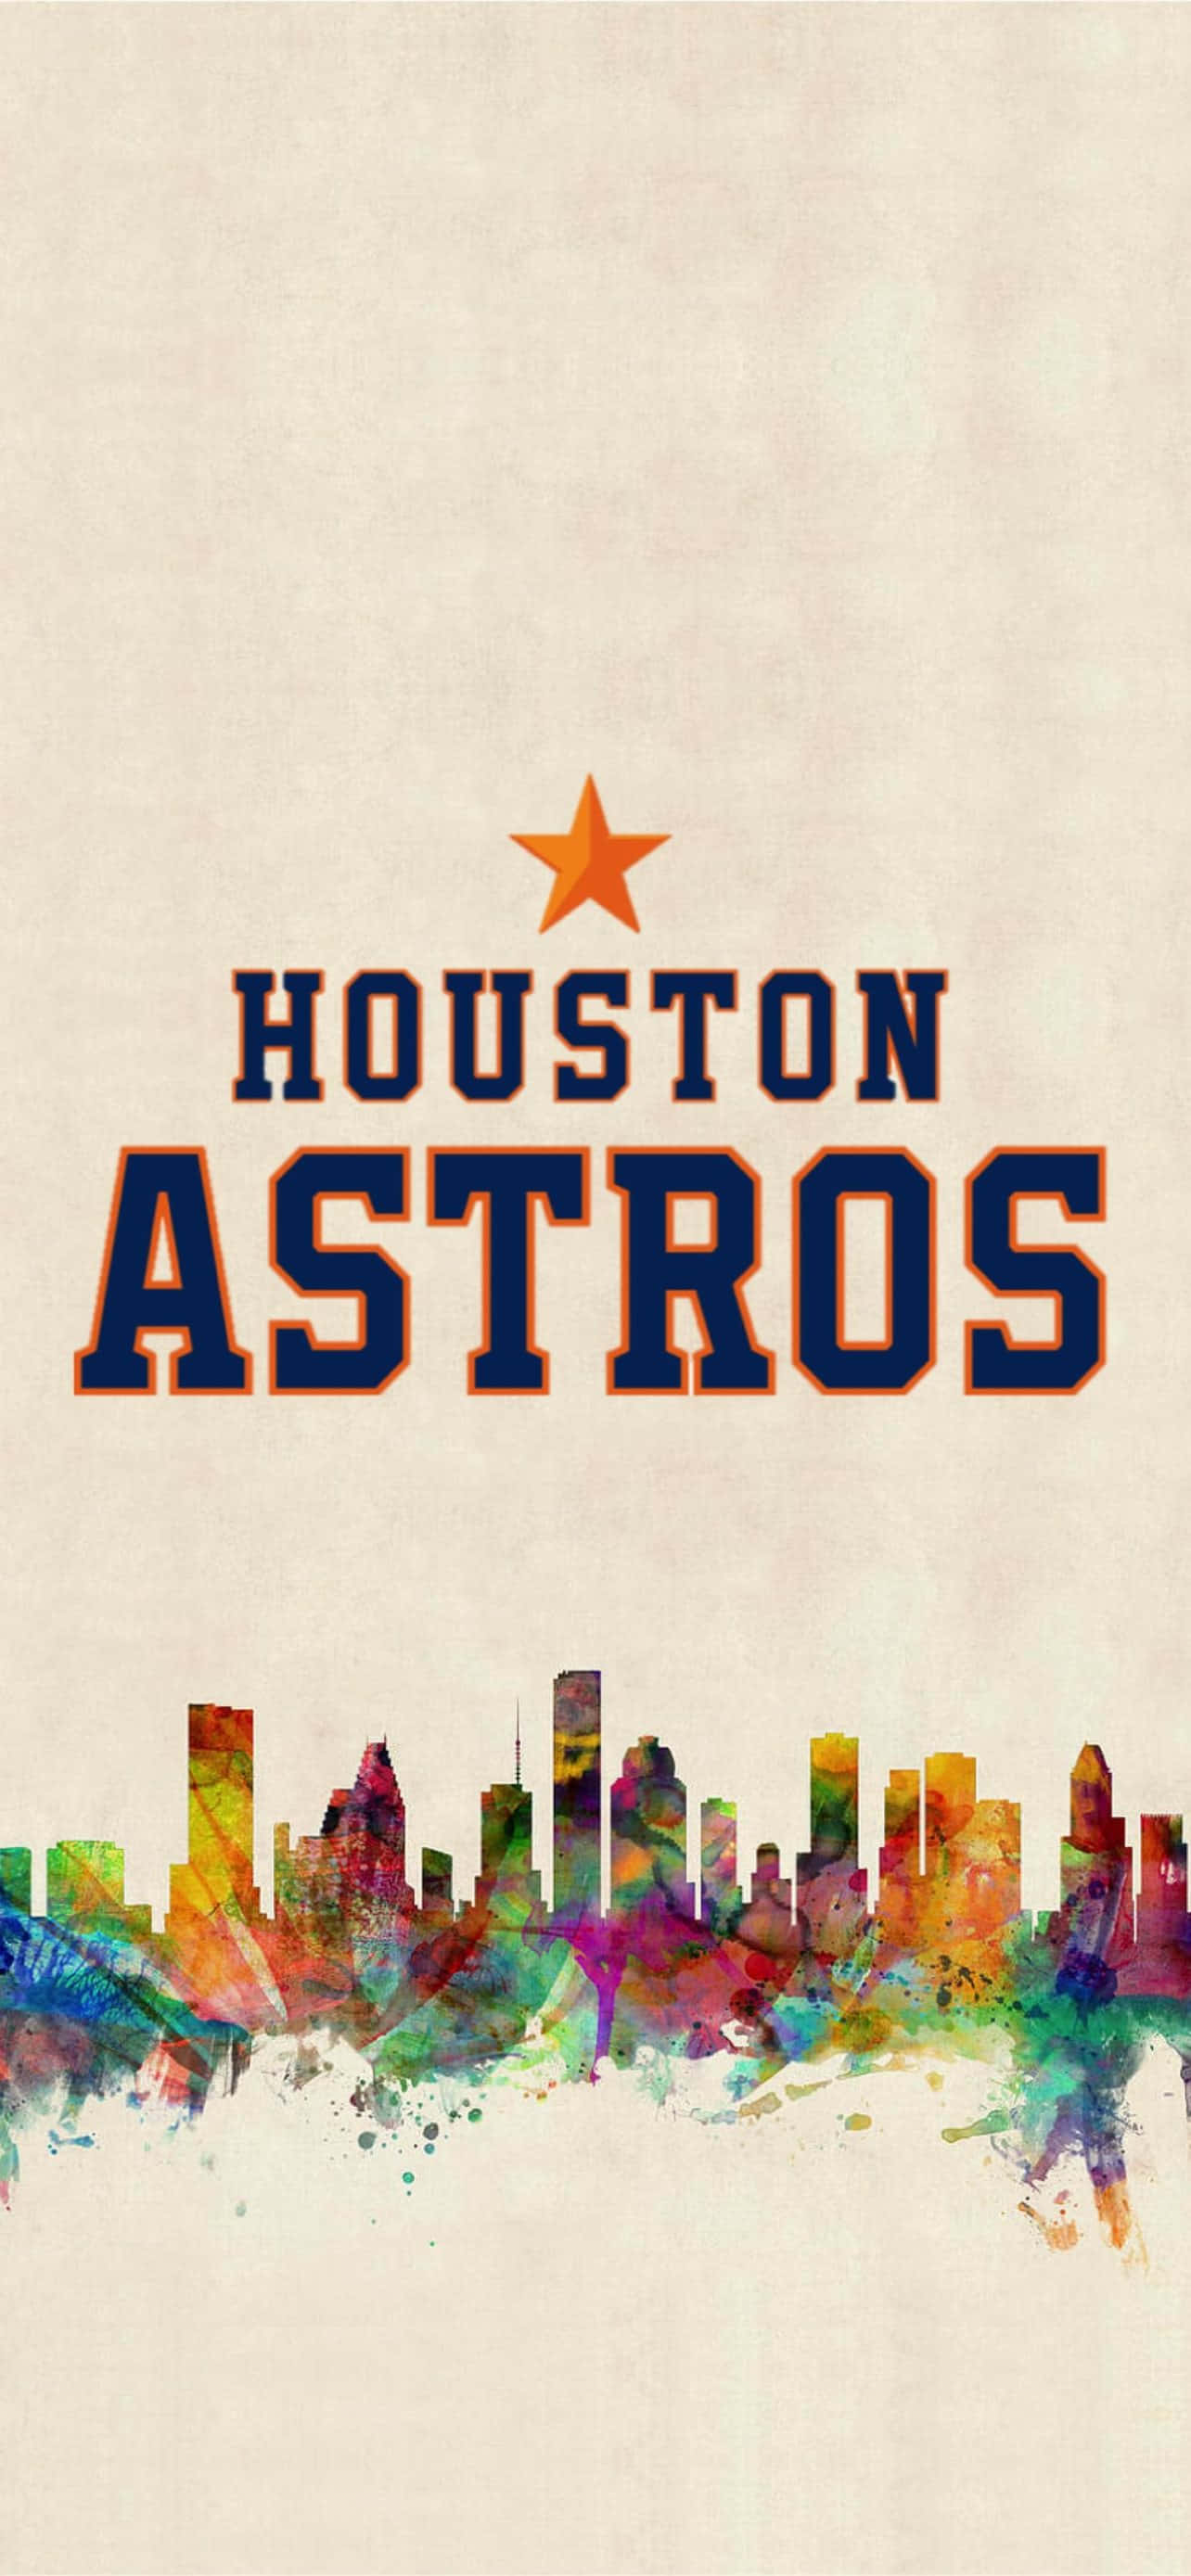 Estadiodel Equipo De Béisbol Houston Astros Durante Un Juego Nocturno.